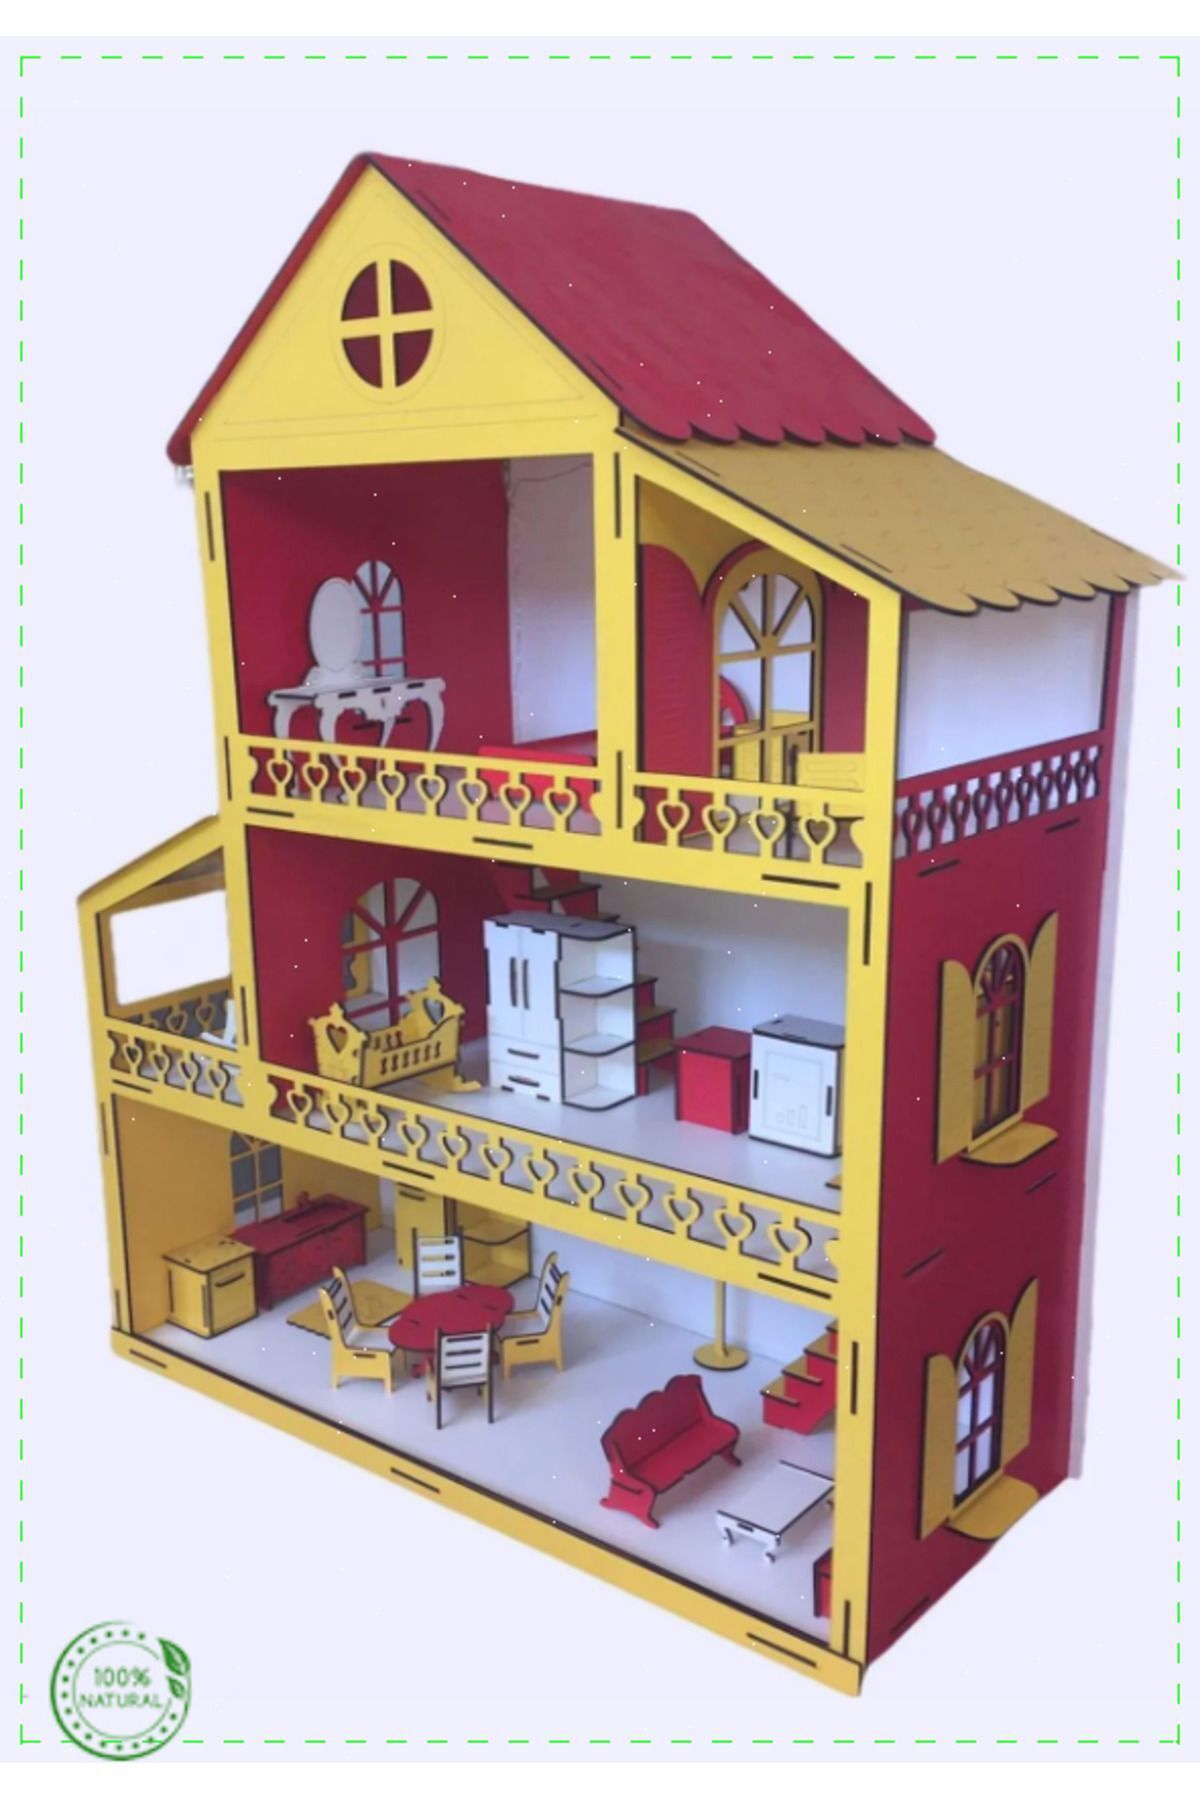 OMZ Ahşap Çocuk Oyun Evi 80cm27 Eşya Yüksek Kaliteli Ürün Kız Erkek Cocuk Egitici Montessori Oyuncaklar